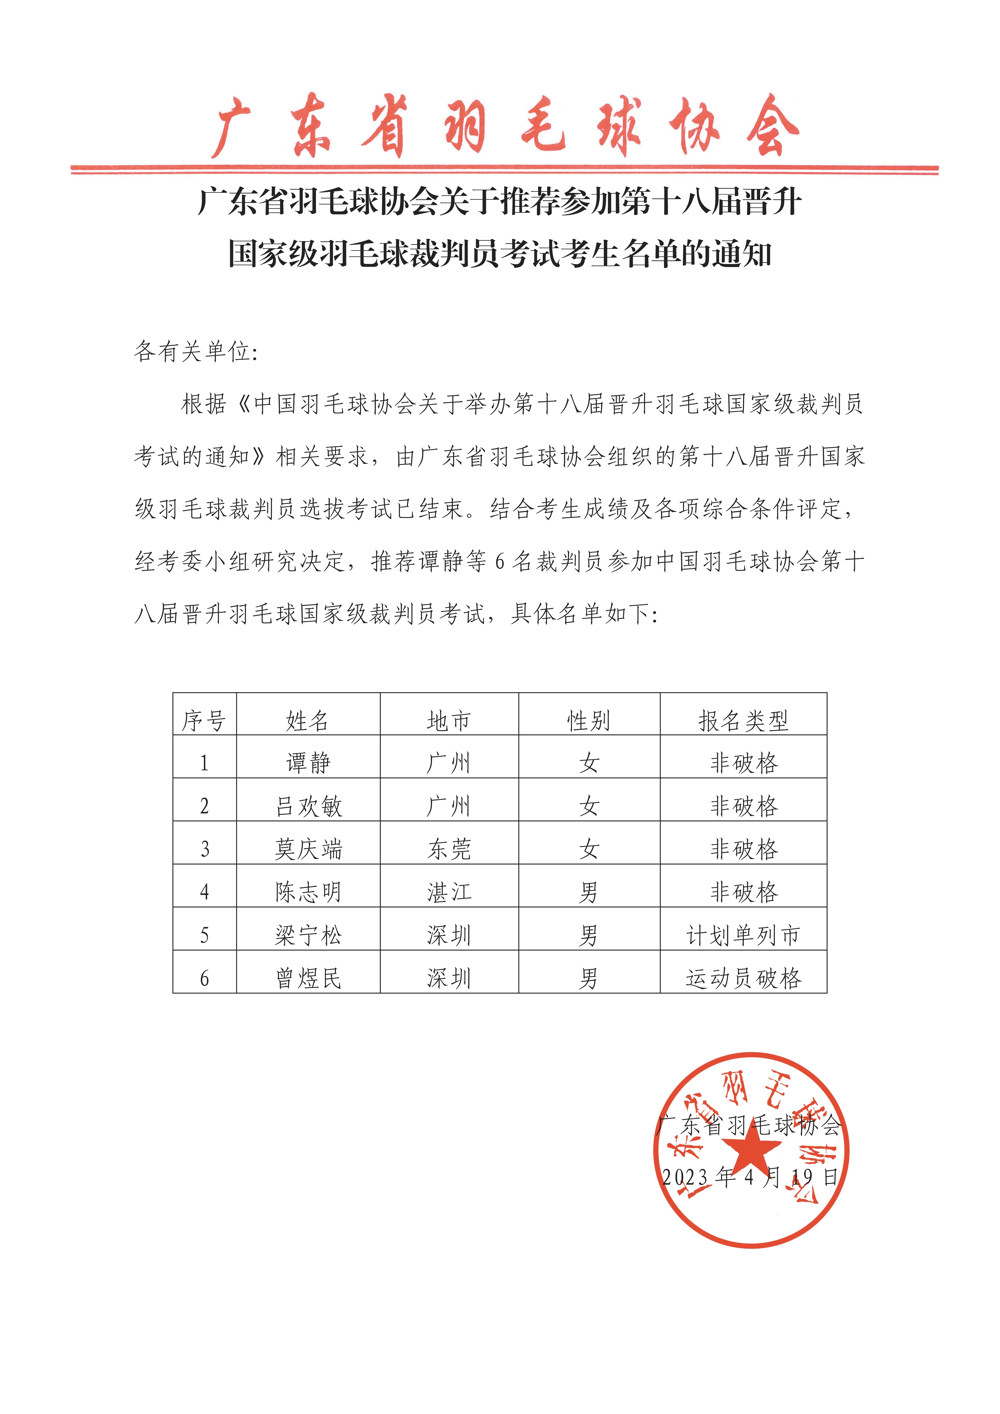 广东省羽毛球协会关于推荐参加第十八届晋升国家级羽毛球裁判员考试考生名单的通知-save-20230419